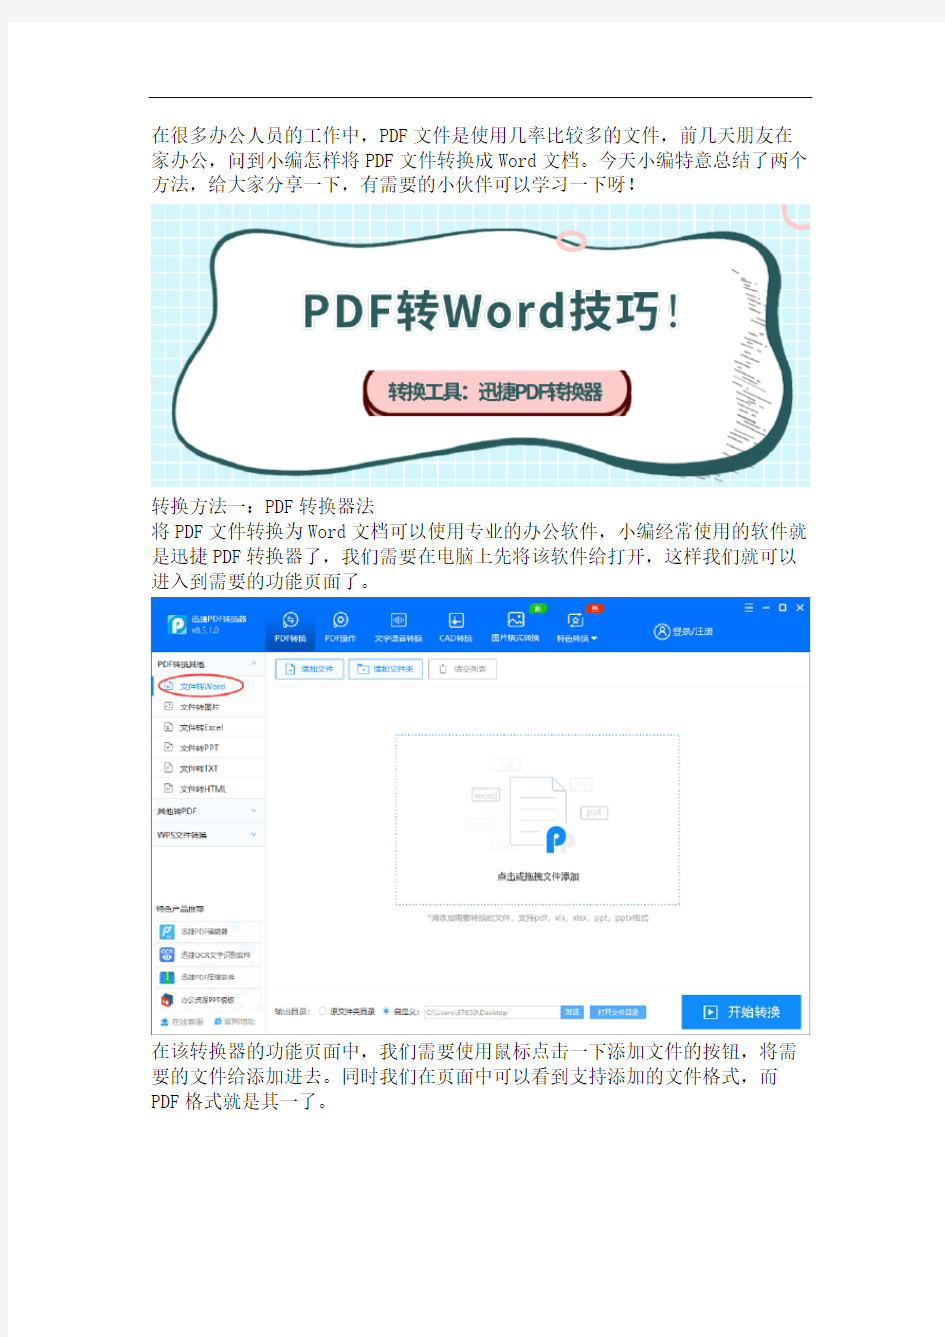 分享两种好用的PDF转Word方法